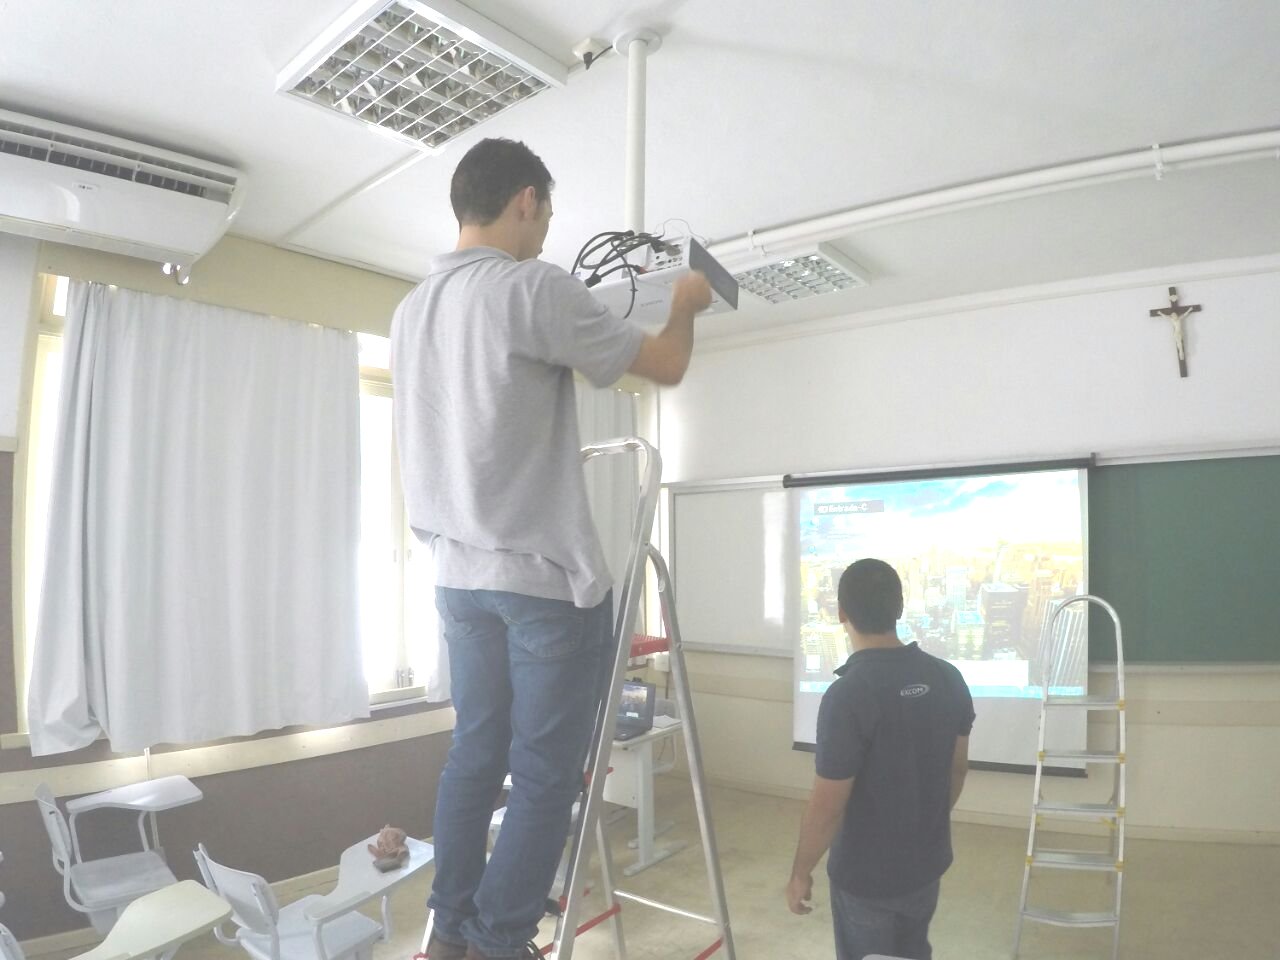 Sala de aula. Homem sobre uma escada conserta projetor. Outro homem está de pé a frente da projeção na tela